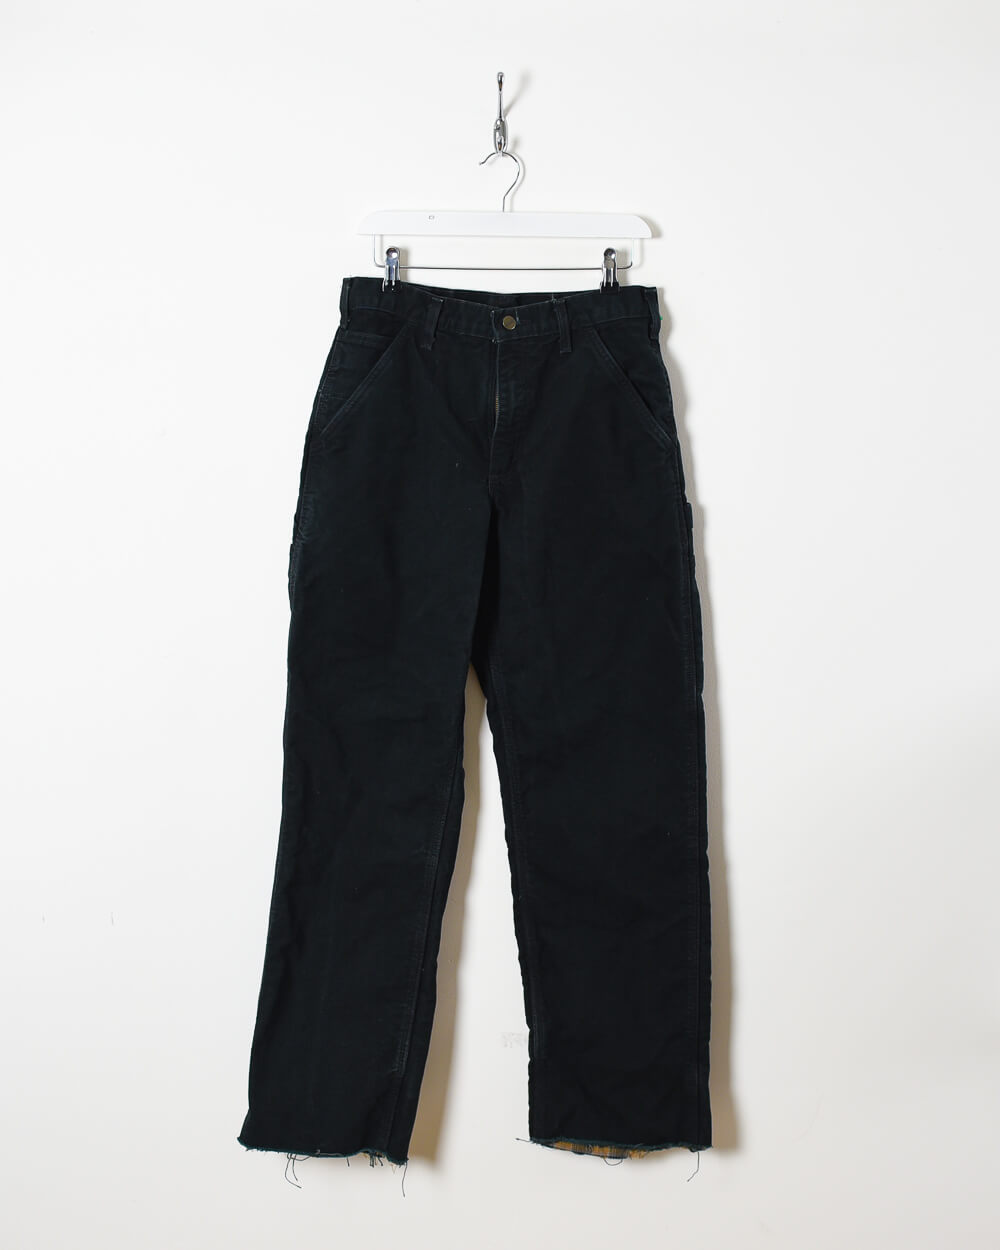 Black Carhartt Jeans - W30 L31